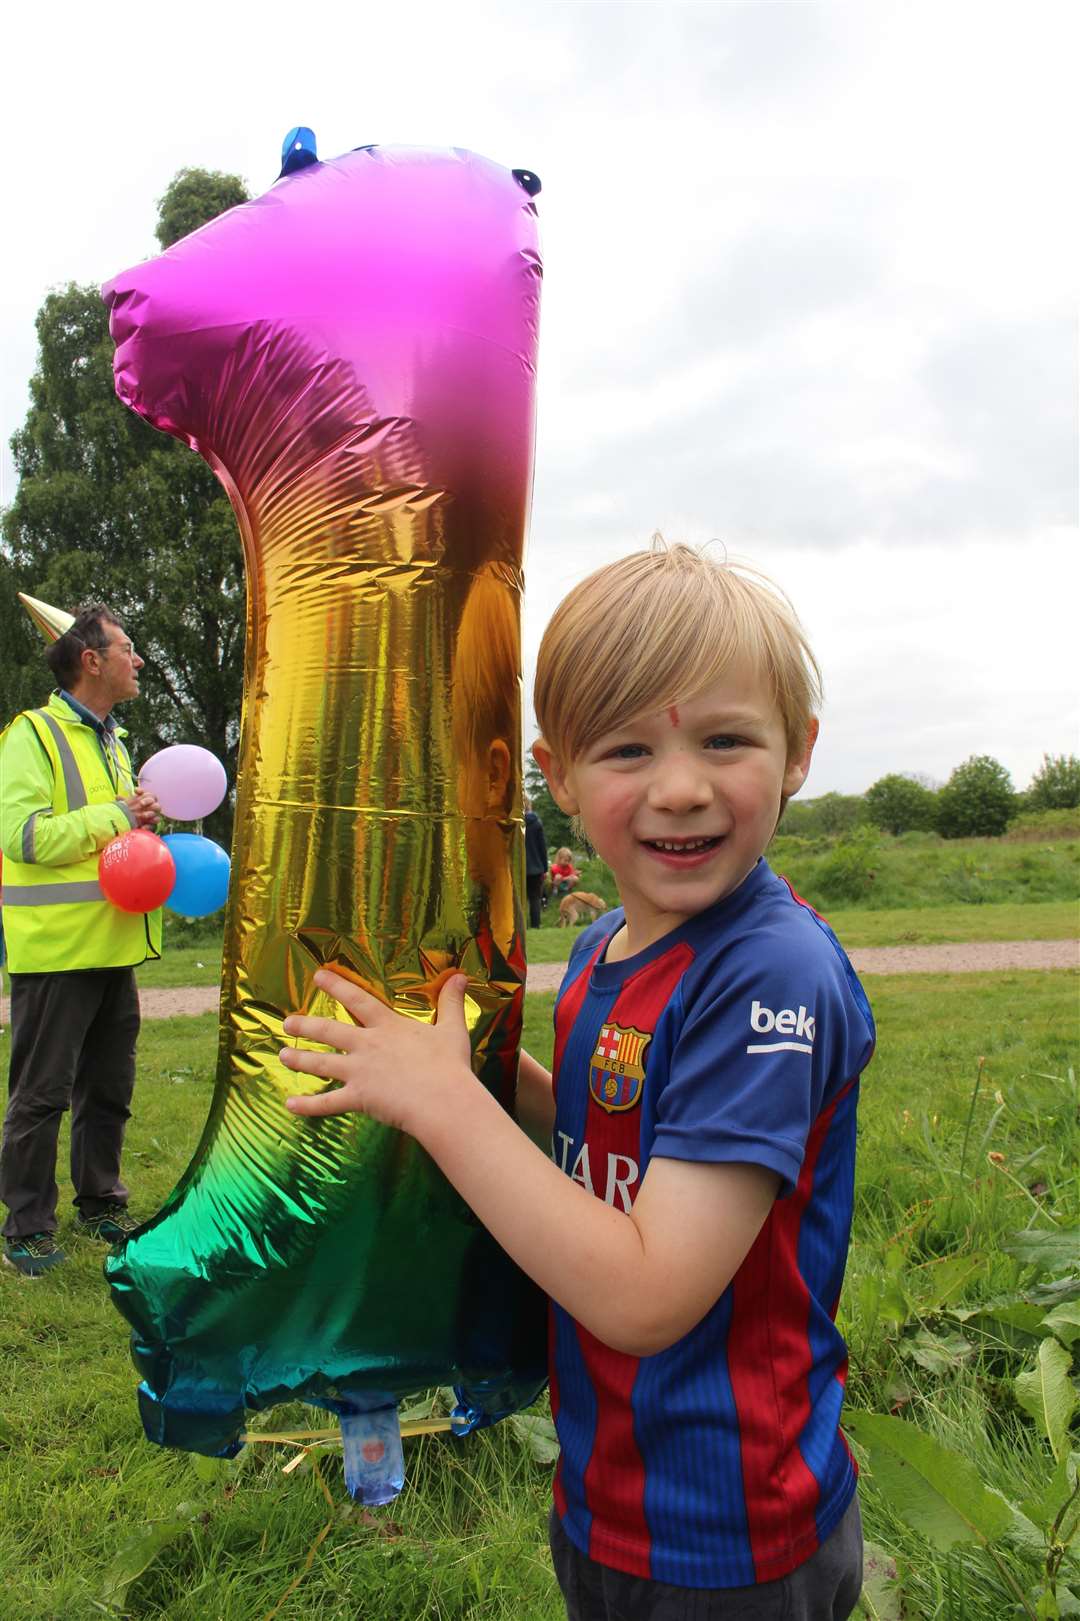 Matthew with the parkrun birthday balloon.